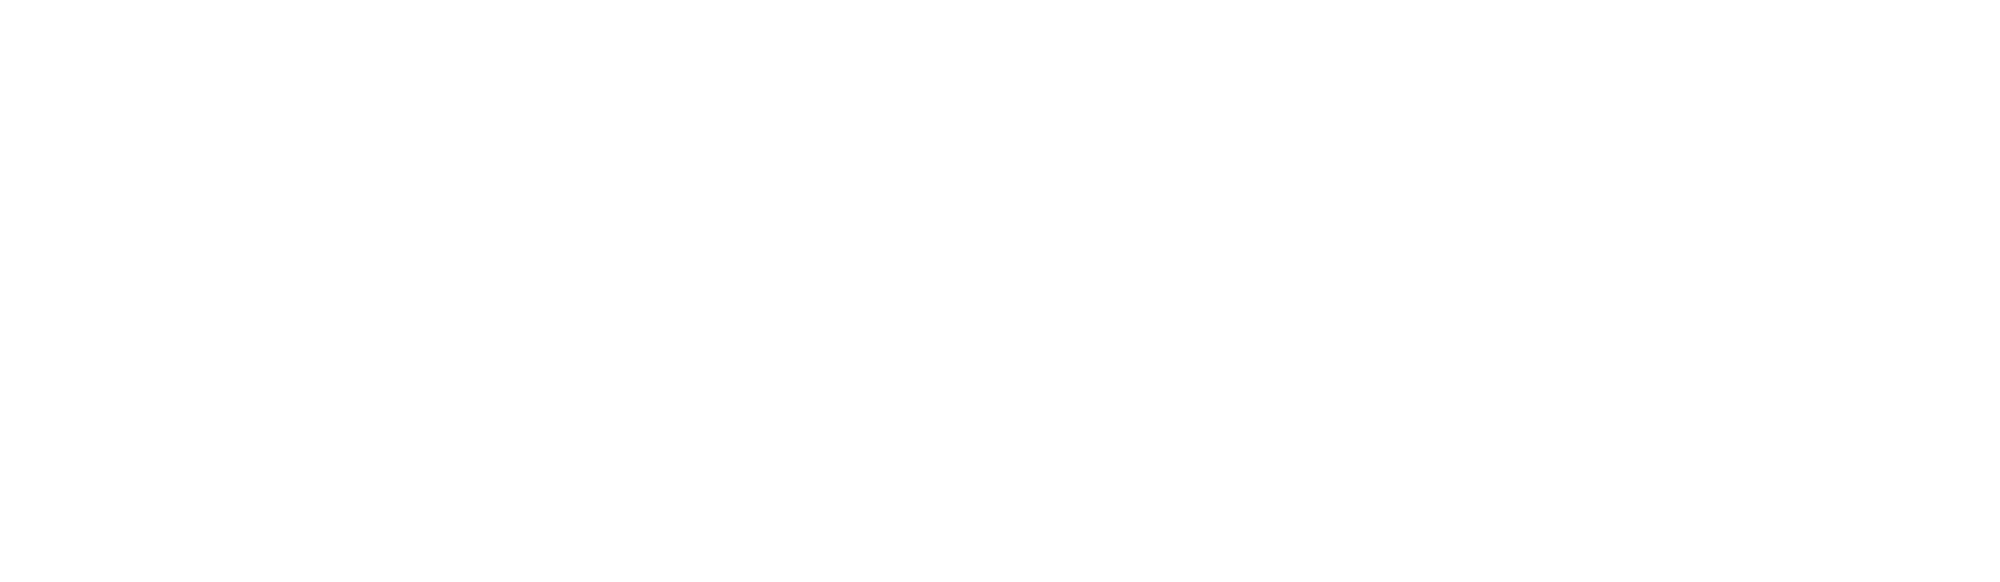 Kodak_logo-Blanc.png